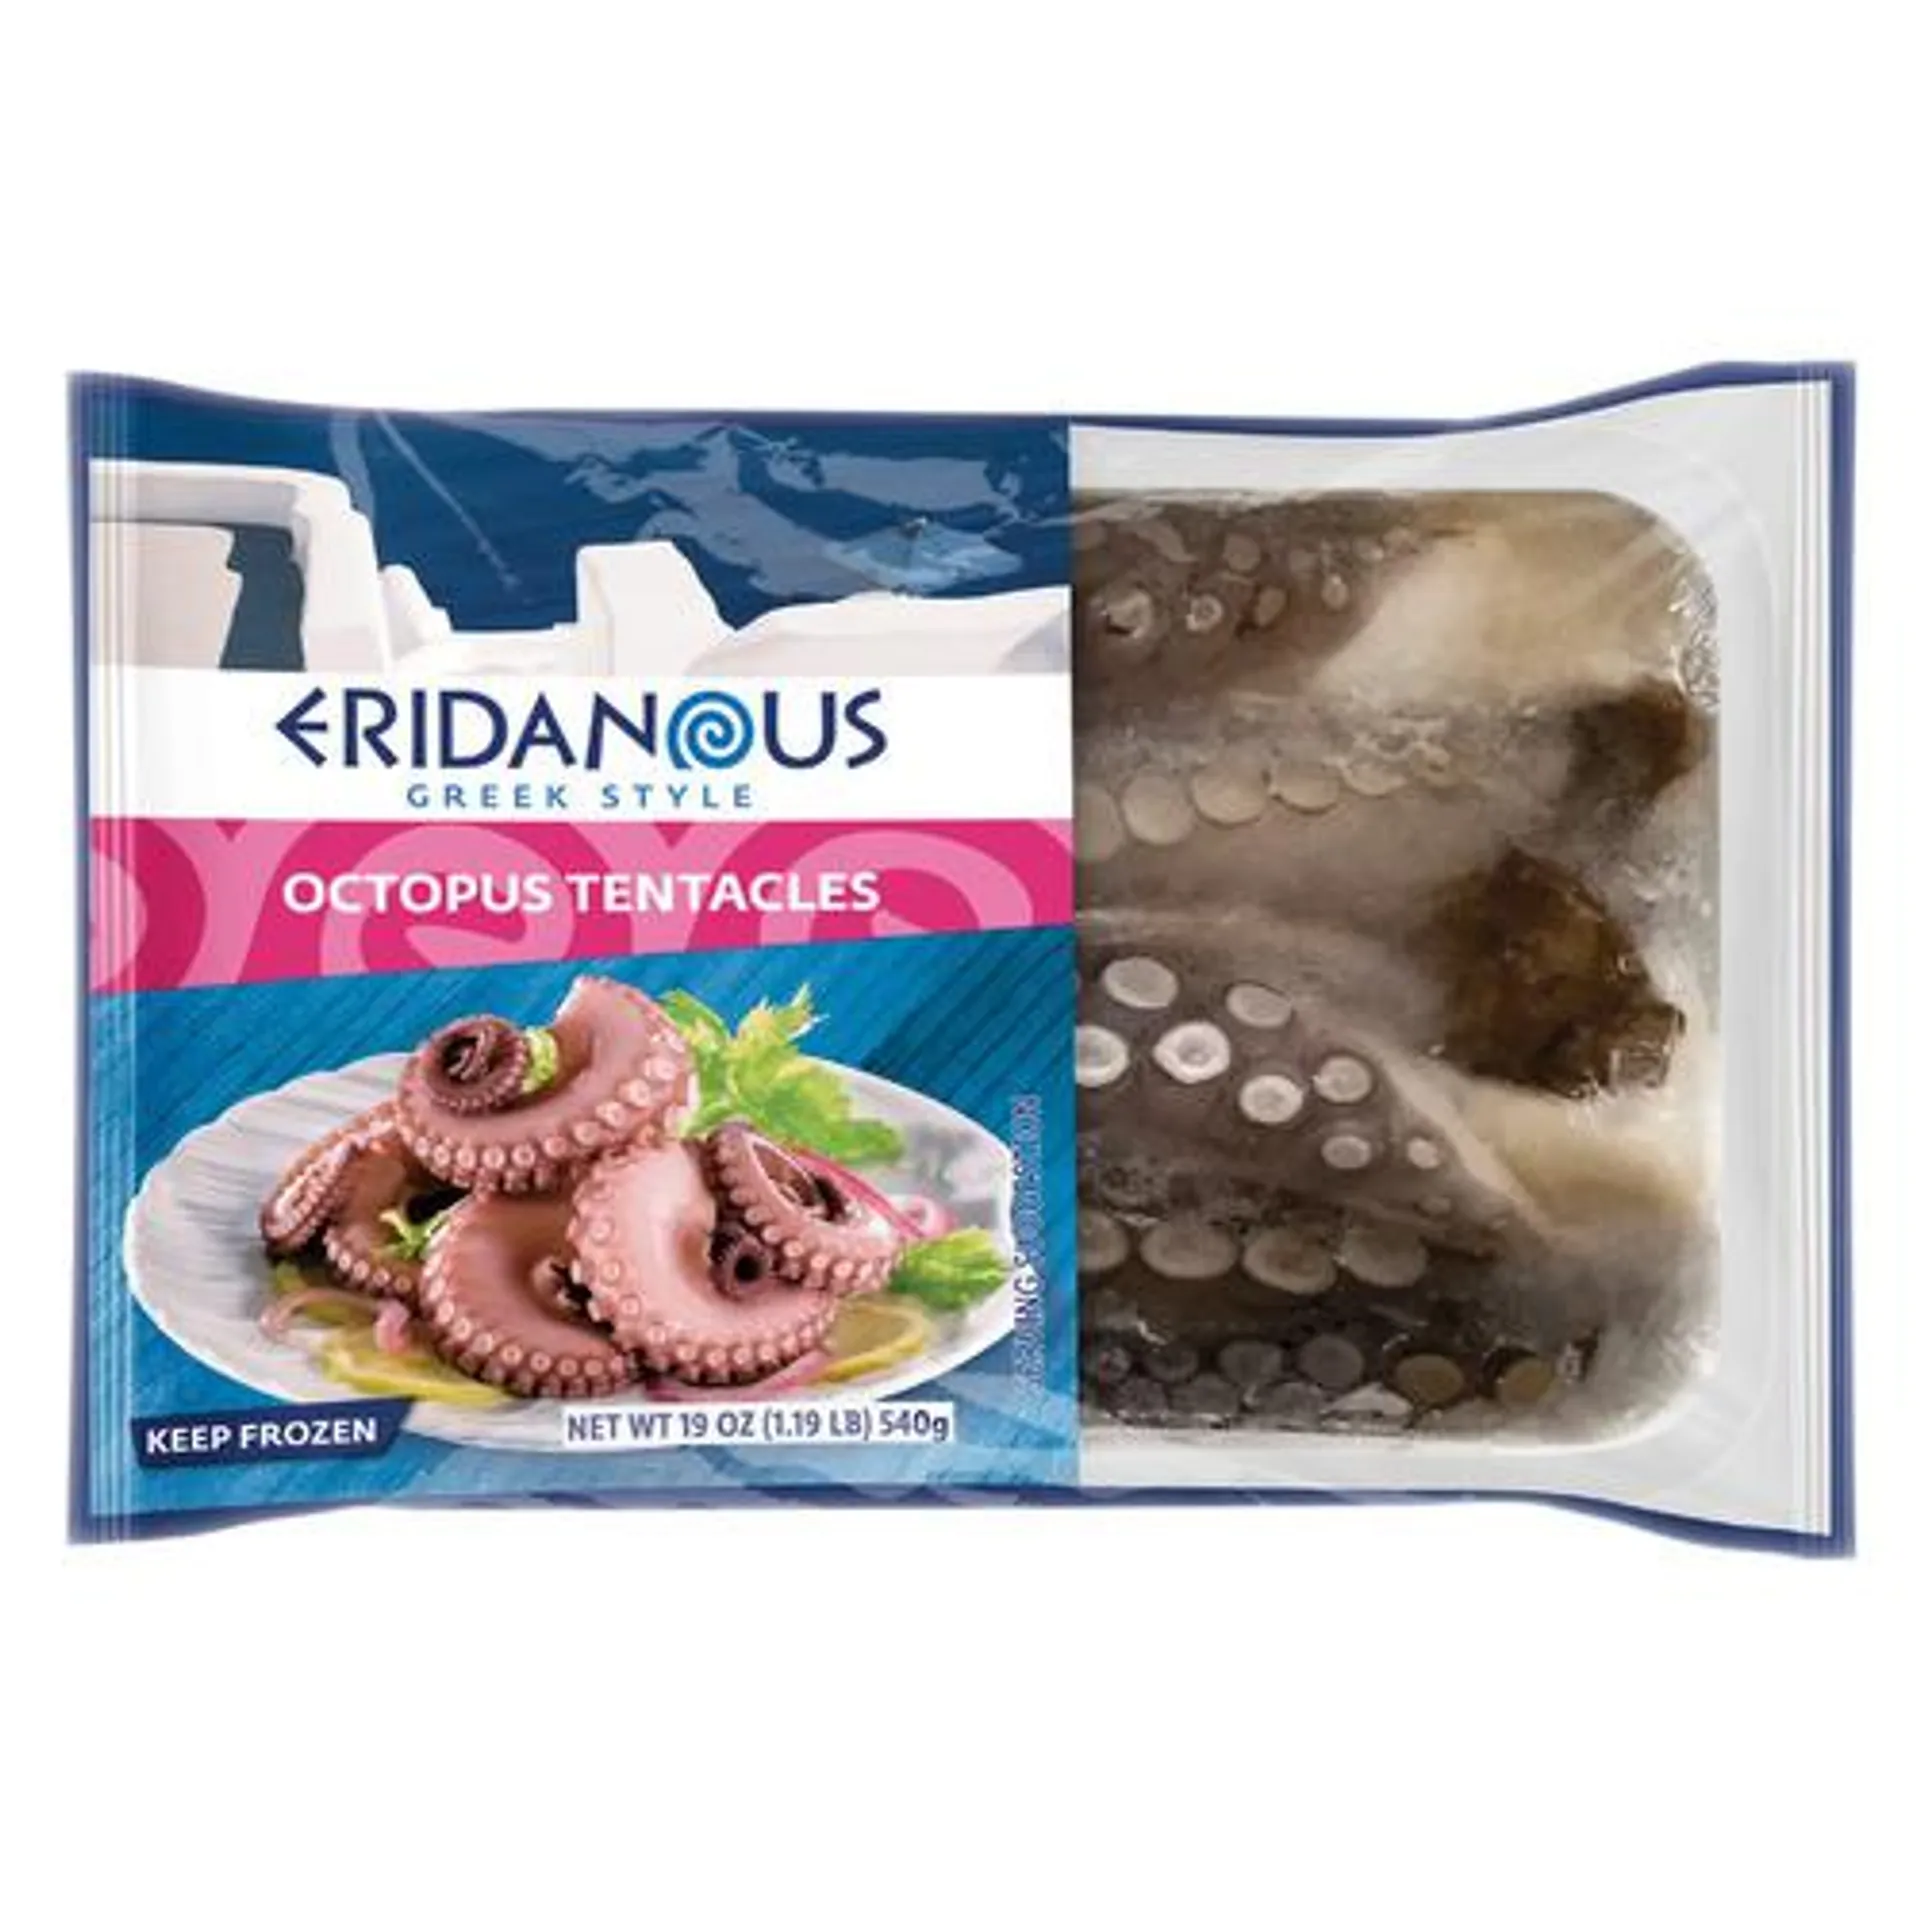 Eridanous frozen octopus tentacles